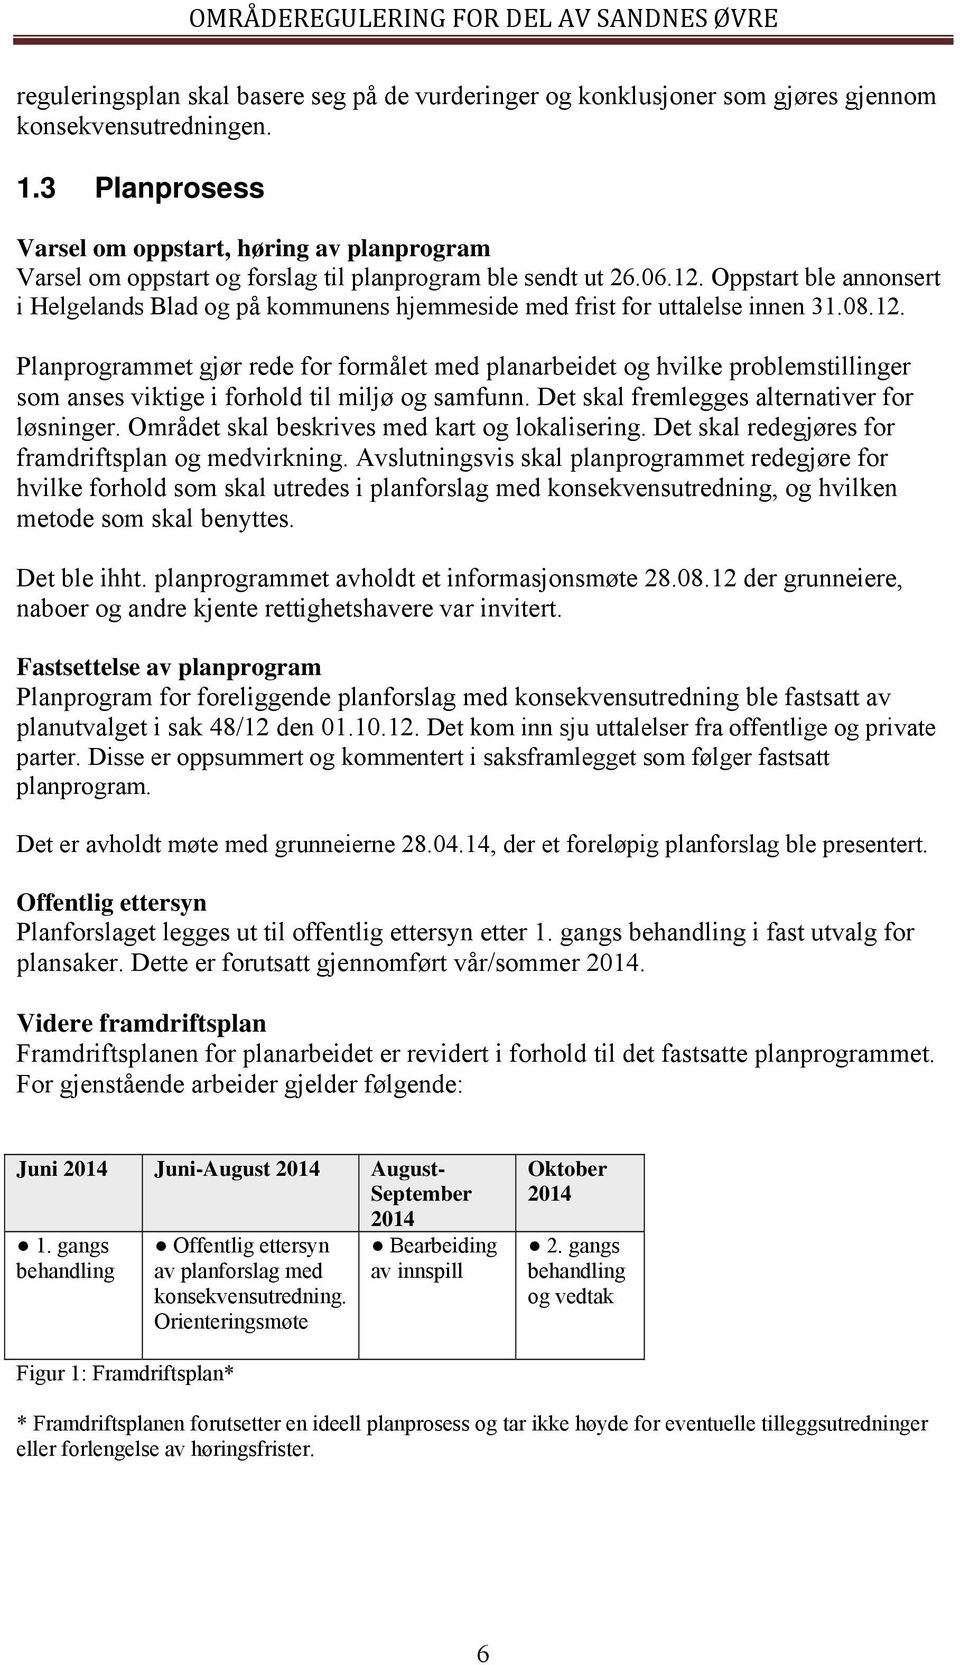 Oppstart ble annonsert i Helgelands Blad og på kommunens hjemmeside med frist for uttalelse innen 31.08.12.